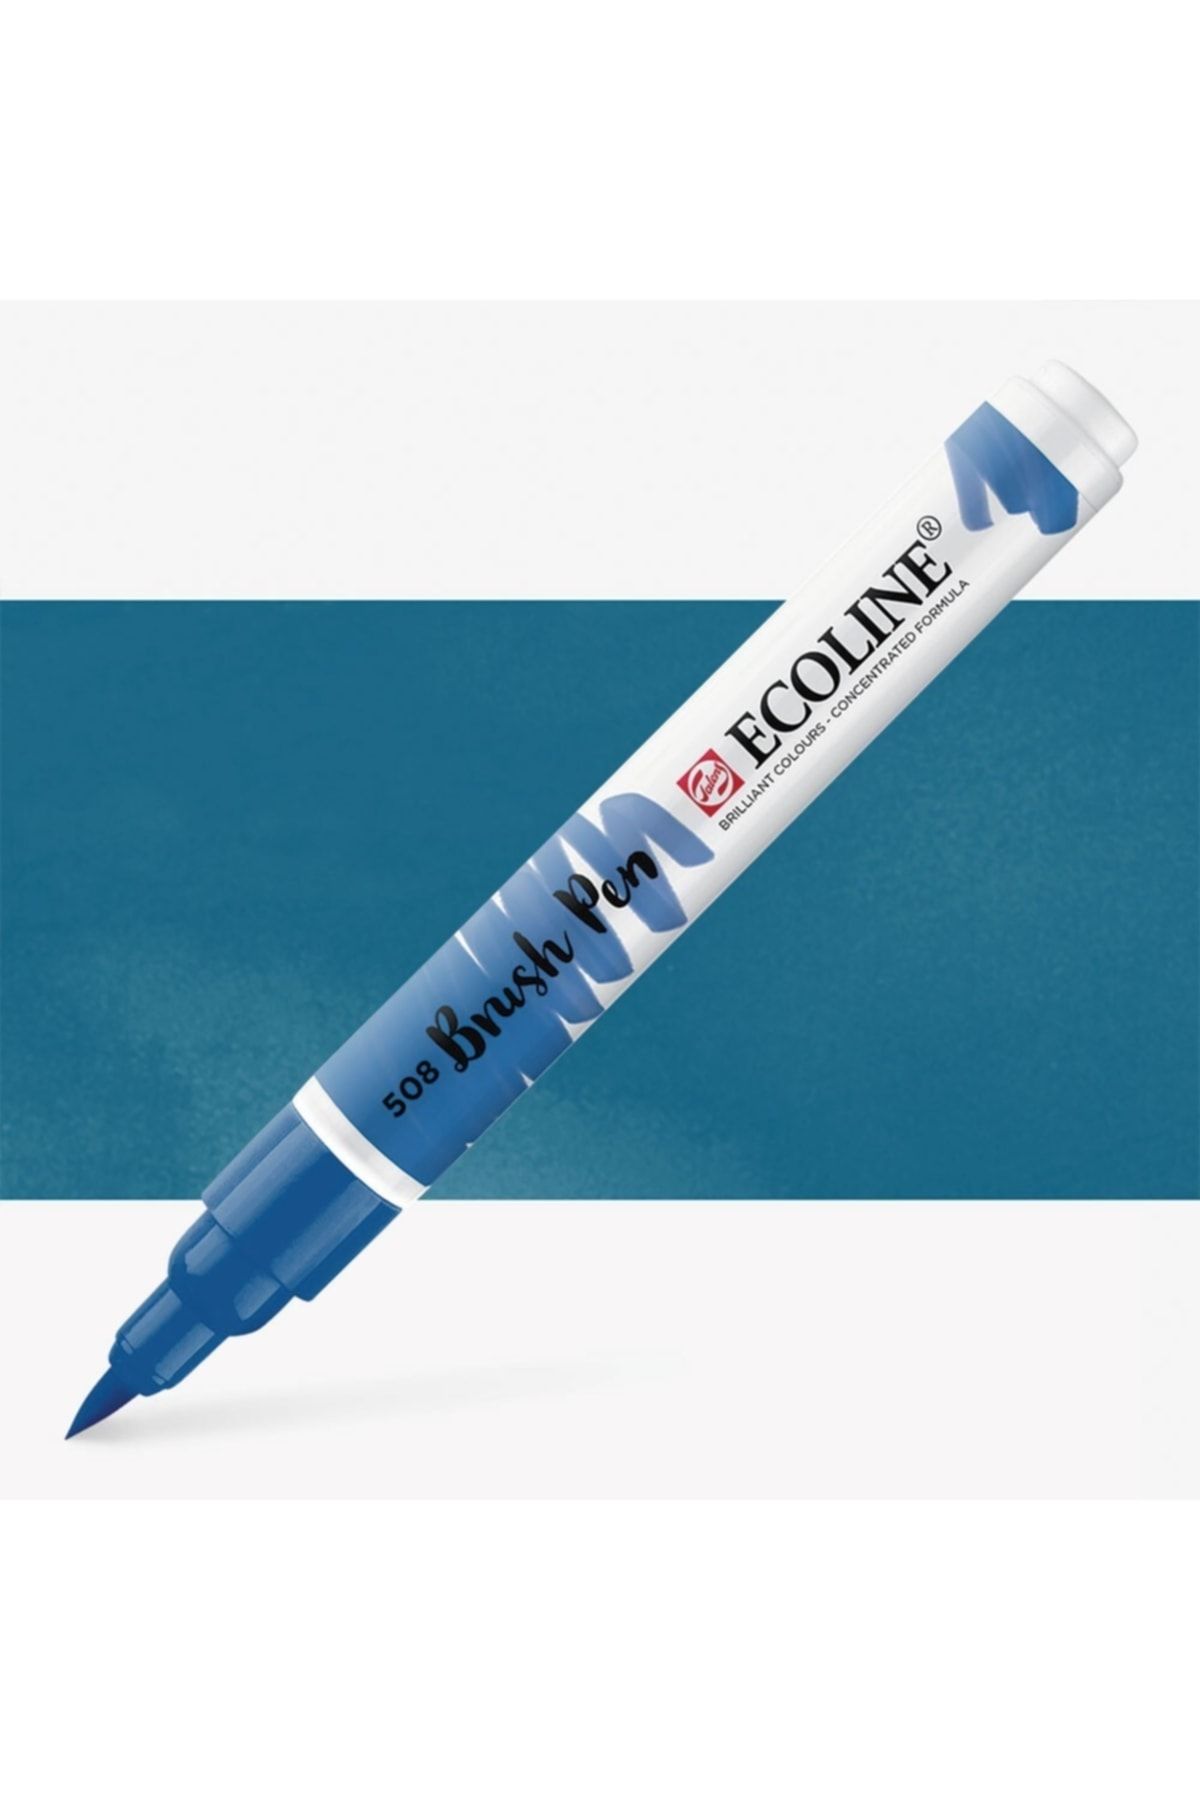 Talens Ecoline Suluboya Brush Pen Prussian Blue 508